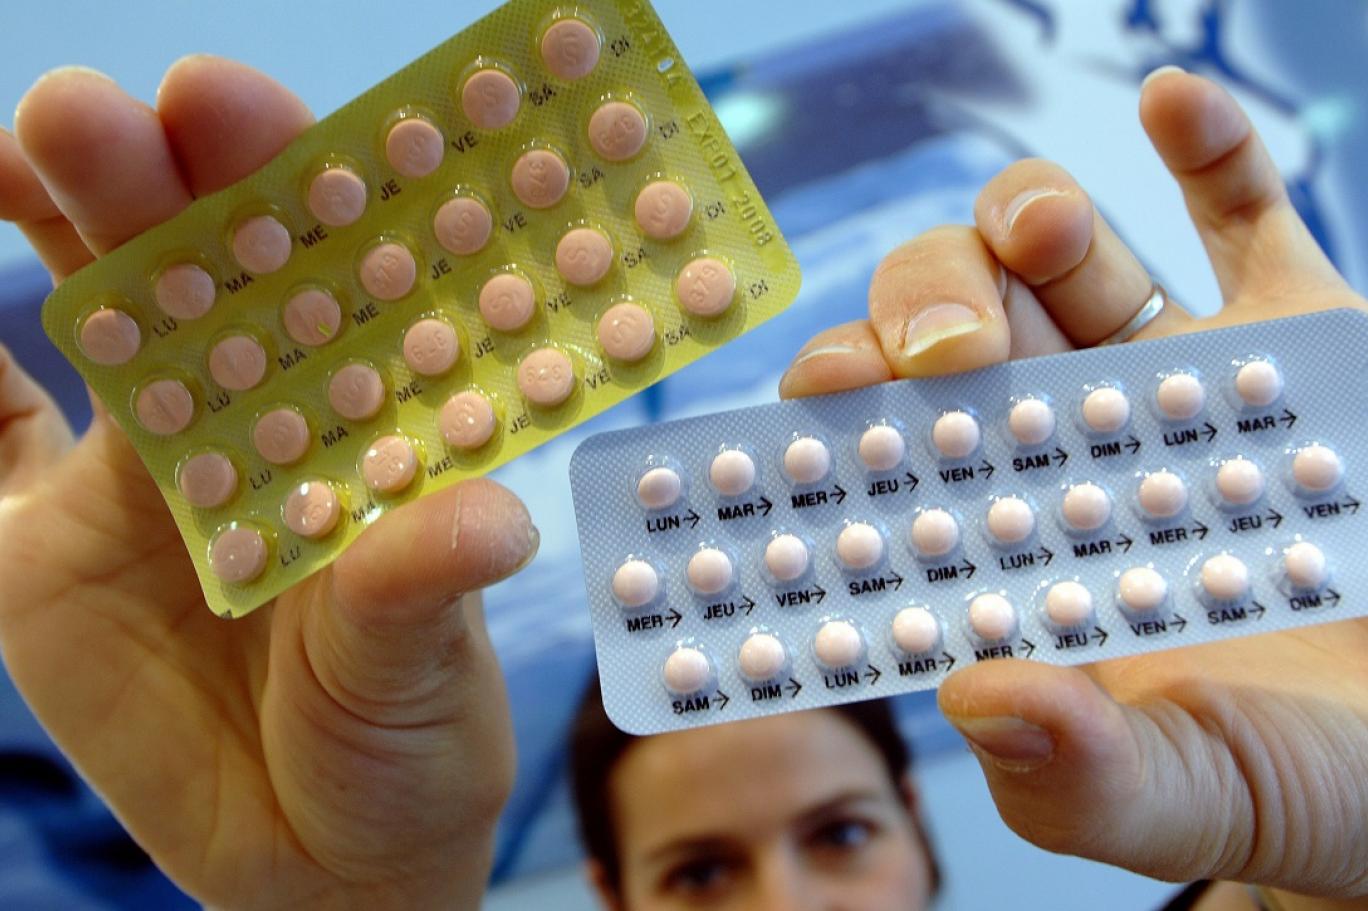 الولايات المتحدة الأمريكية تسمح ببيع حبوب منع الحمل لأول مرة بدون وصفة طبية